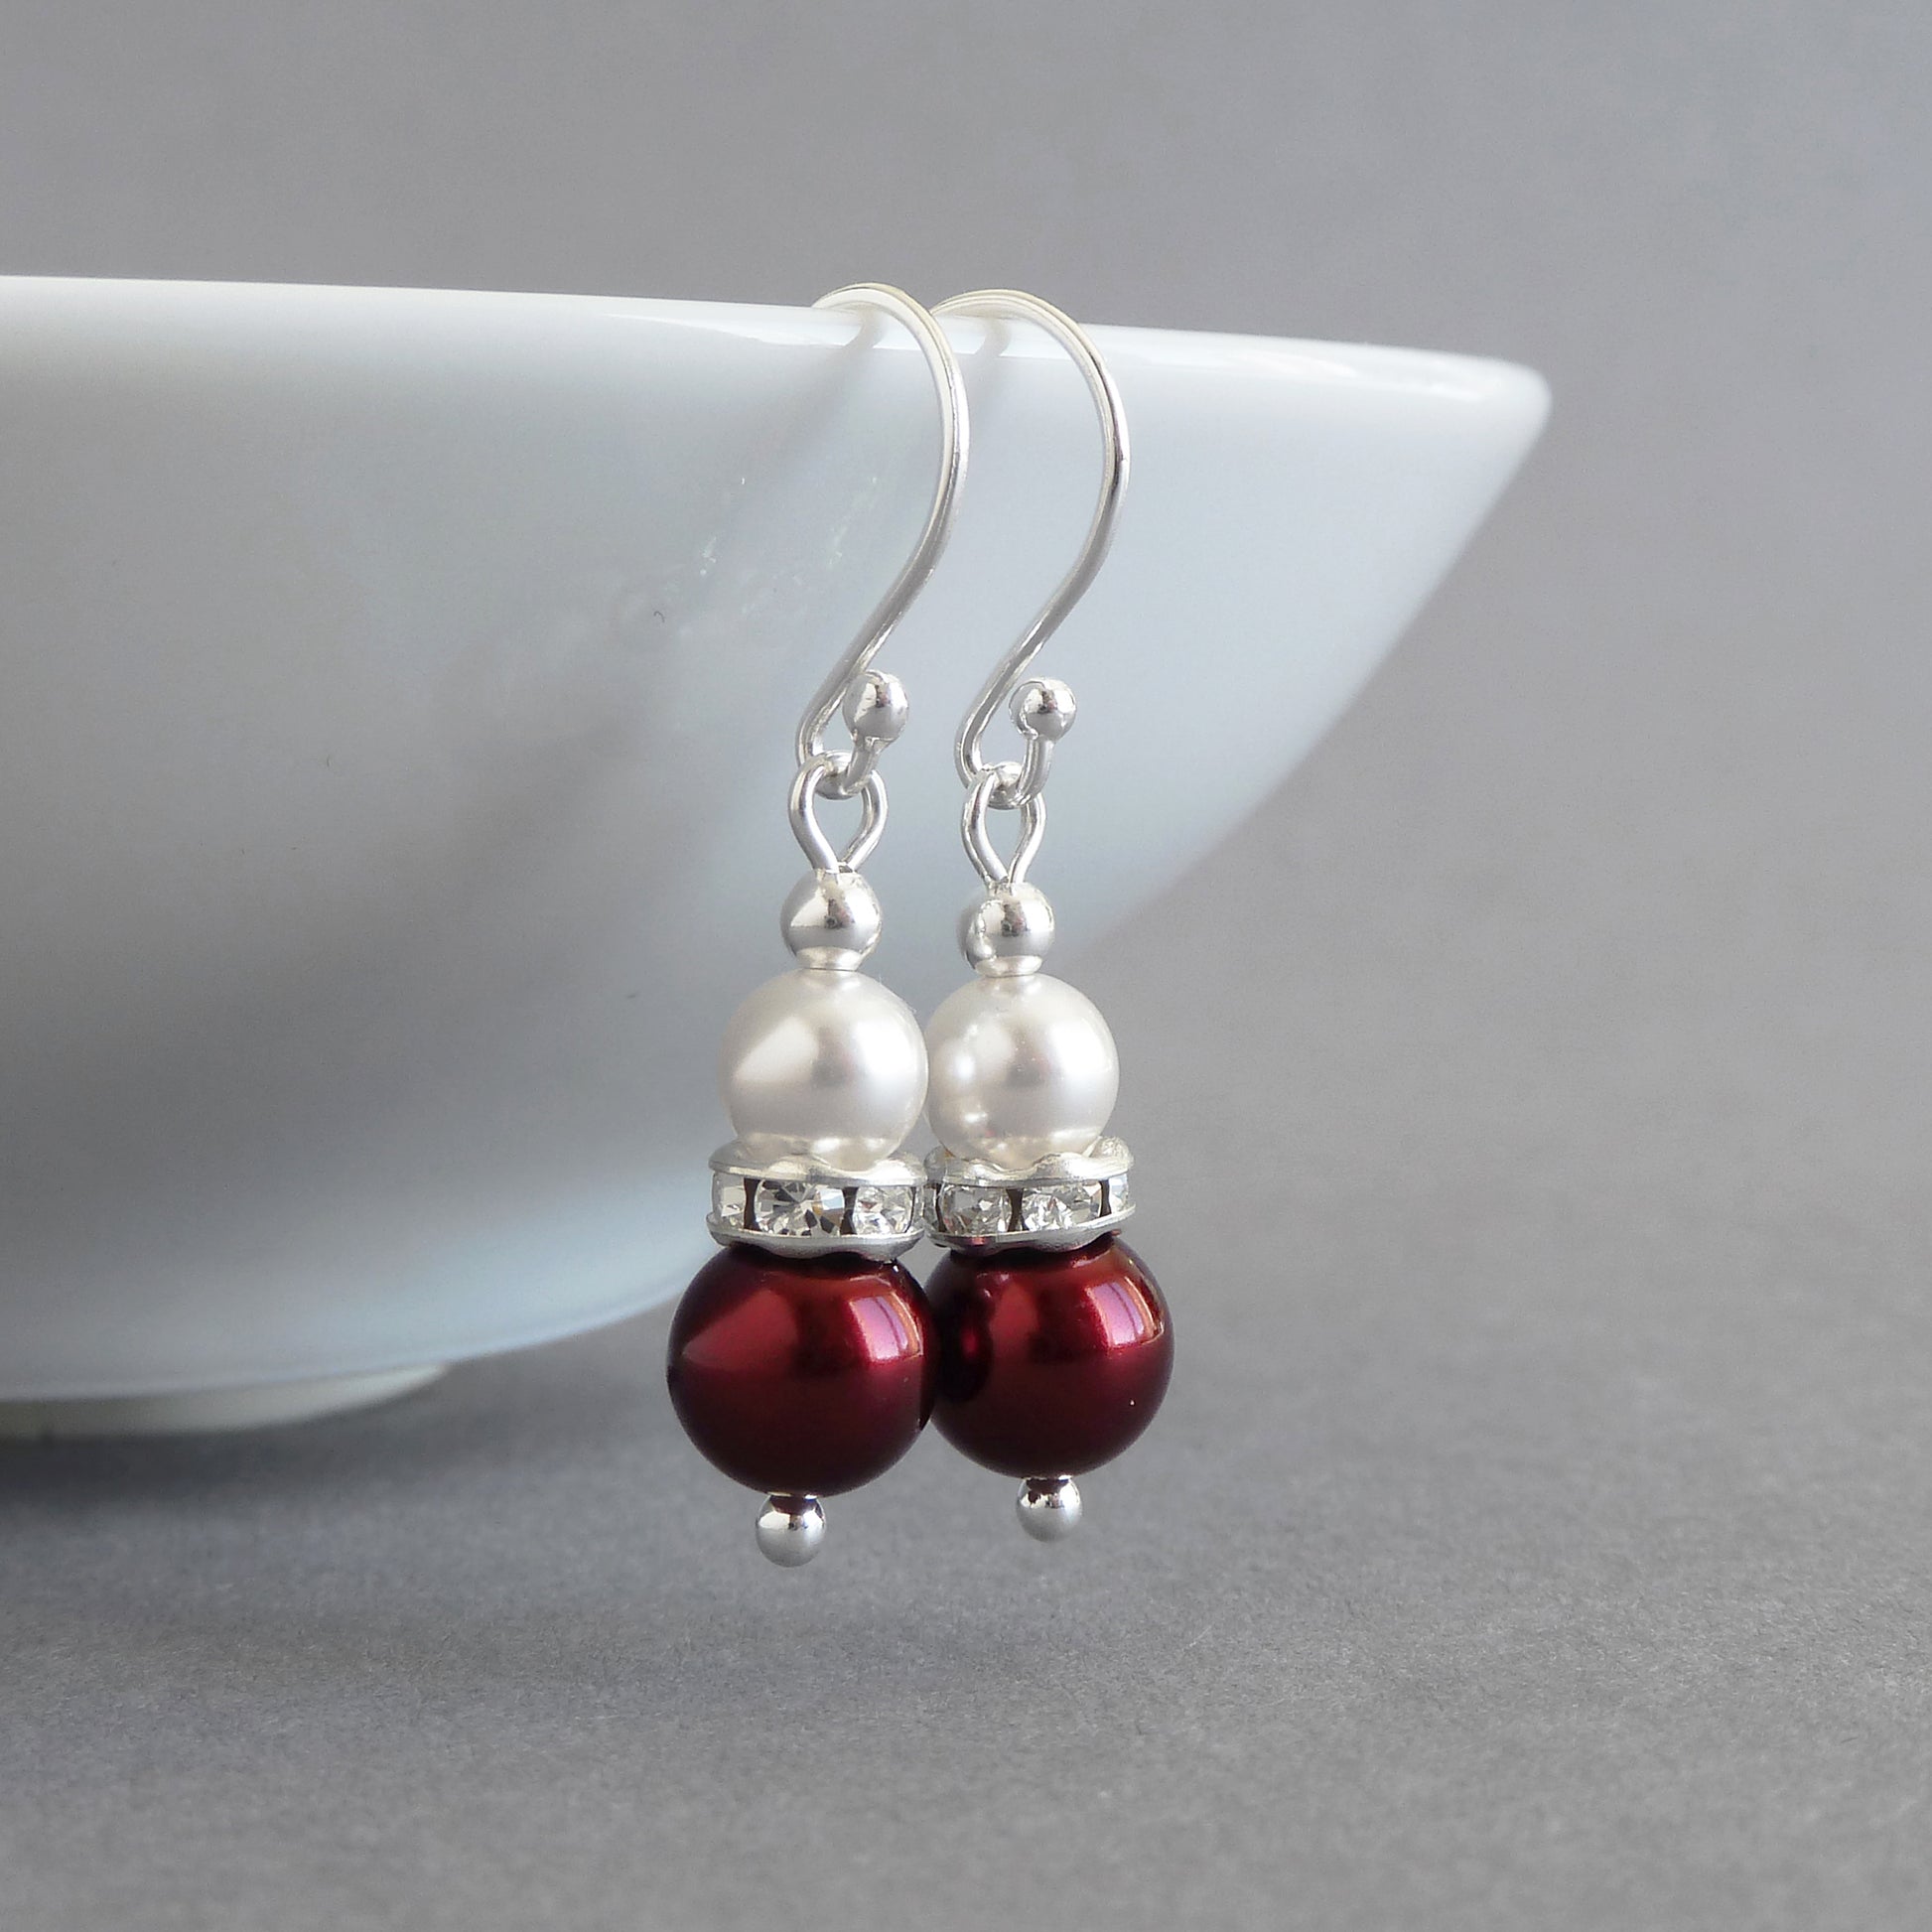 Burgundy pearl and crystal earrings